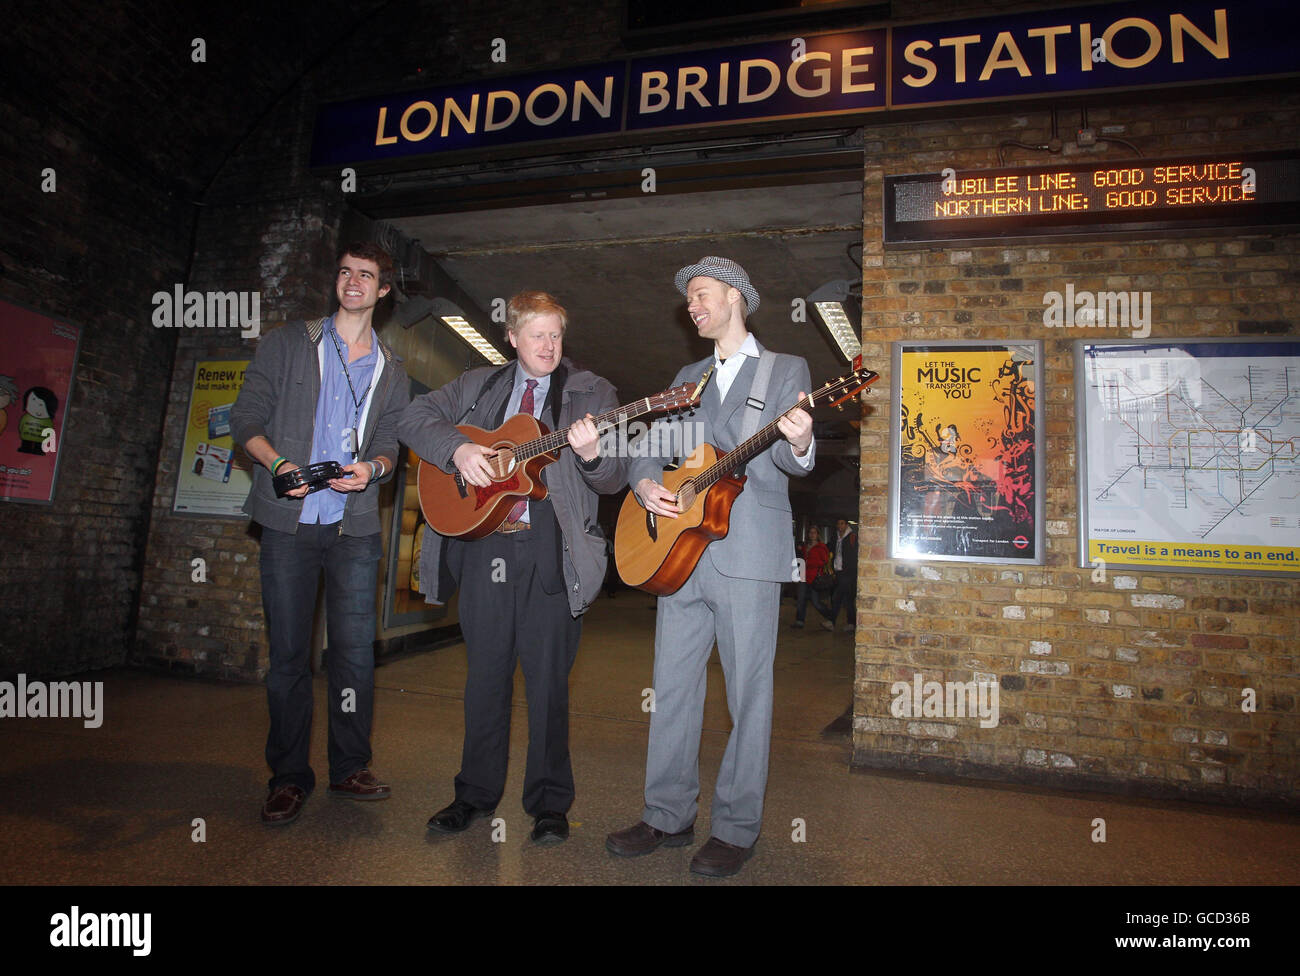 Boris Johnson, maire de Londres, avec Jamie West, vainqueur de l'année dernière, 23 (à droite) et l'un des derniers coureurs de Chris Read (à gauche), à la station de métro London Bridge, Londres. Le maire a lancé un concours pour trouver le meilleur talent musical de la capitale. Banque D'Images